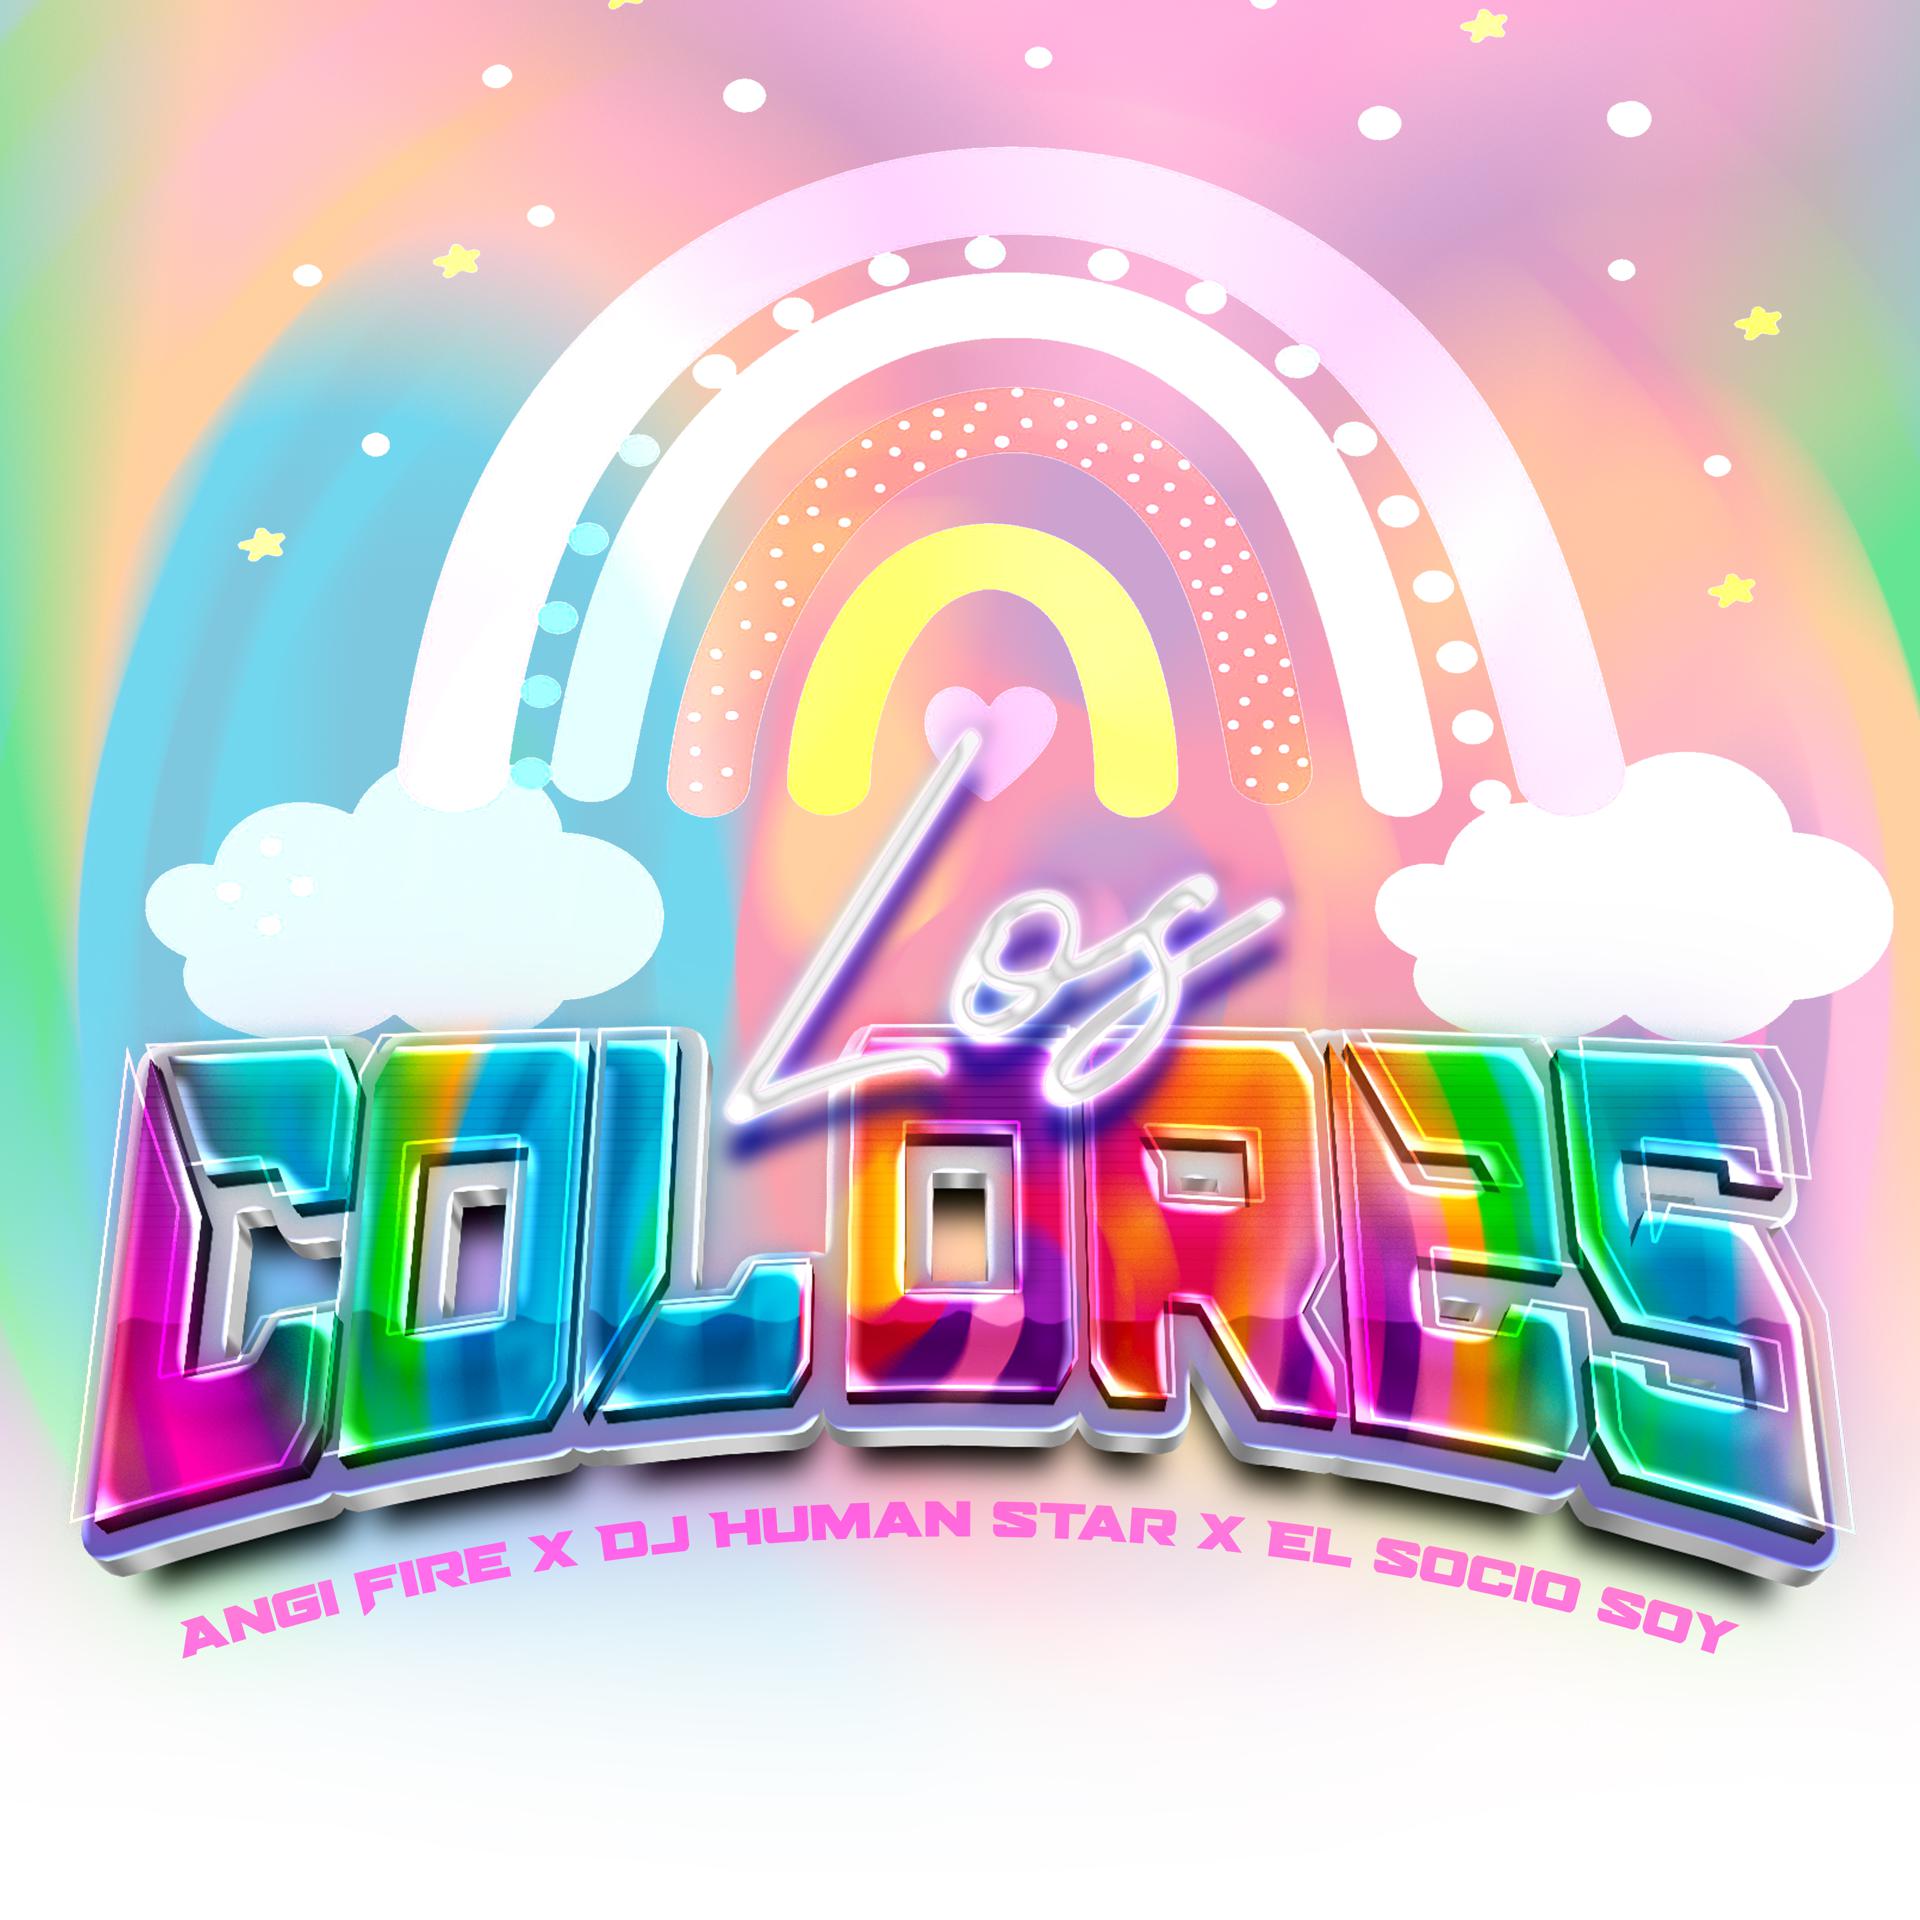 Постер альбома Los Colores